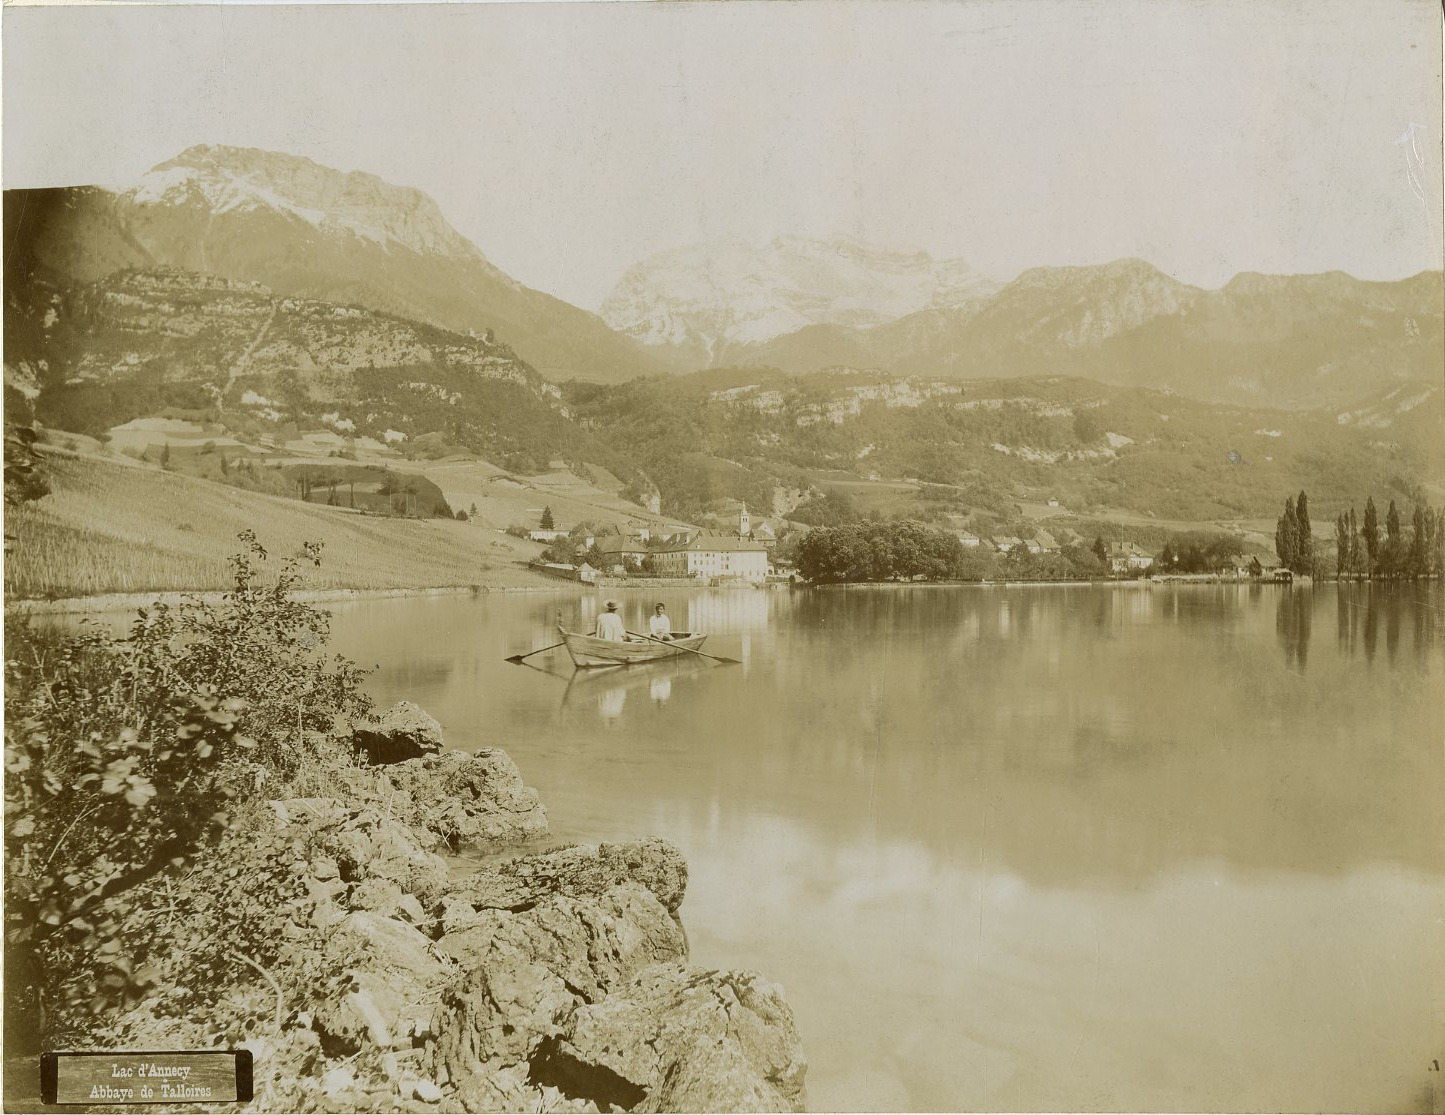 France, Lake Annecy, Abbey of Talloires Vintage Albumen Print.  Print